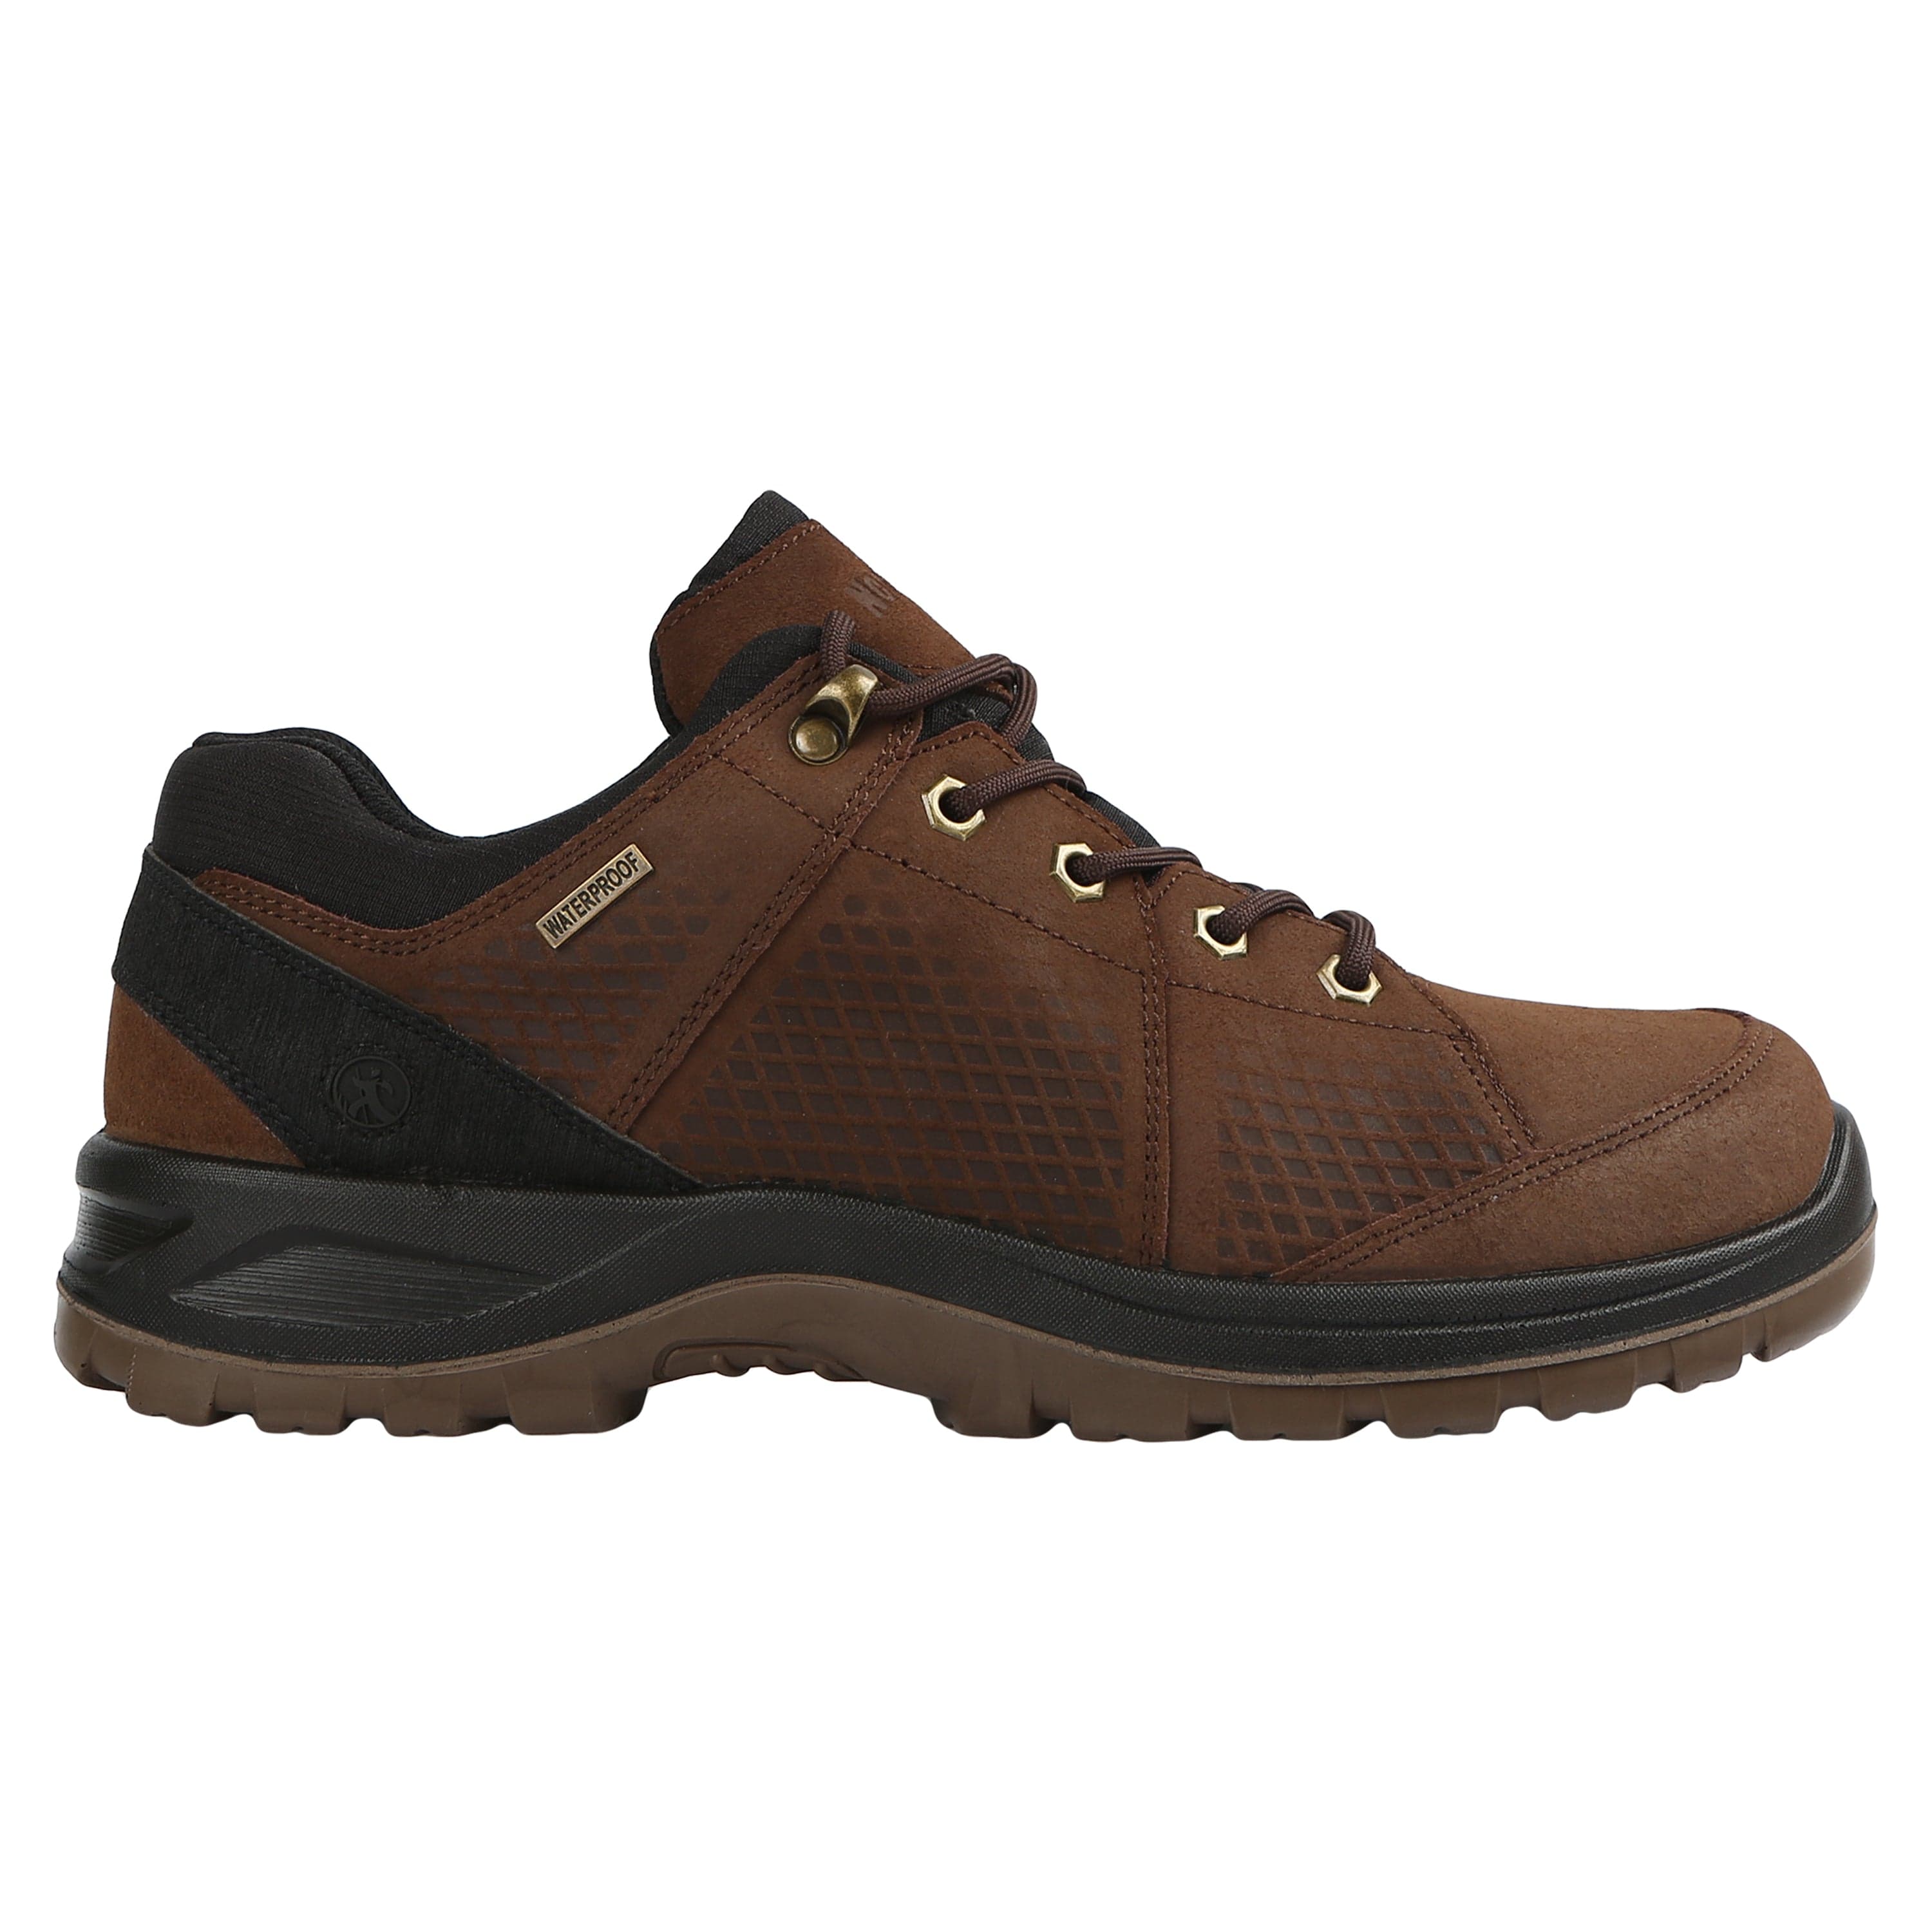 Men's Rockford Waterproof Leather Hiking Shoe